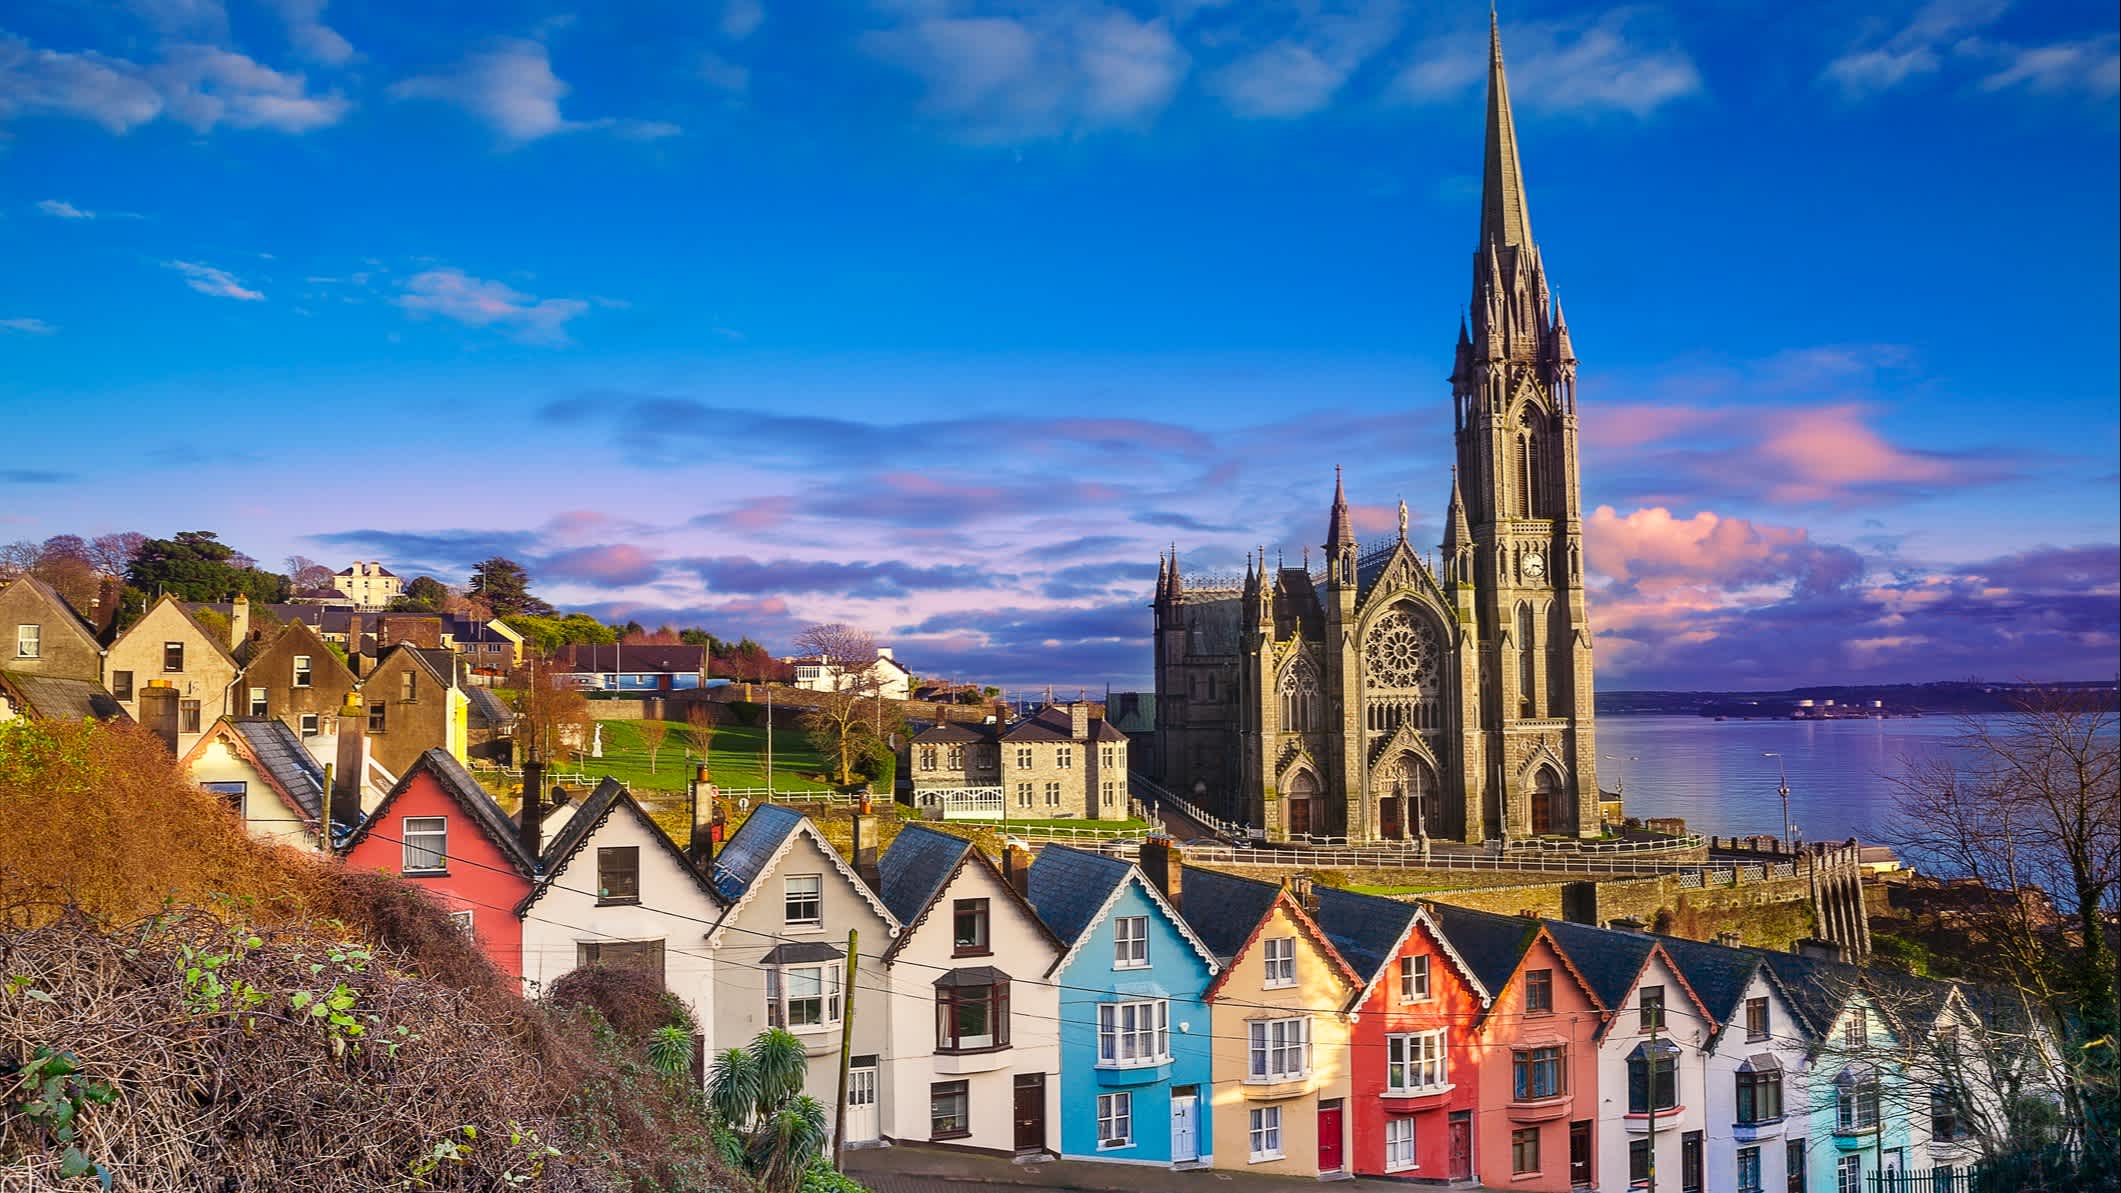 Maisons et cathédrale de Cobh, Irlande